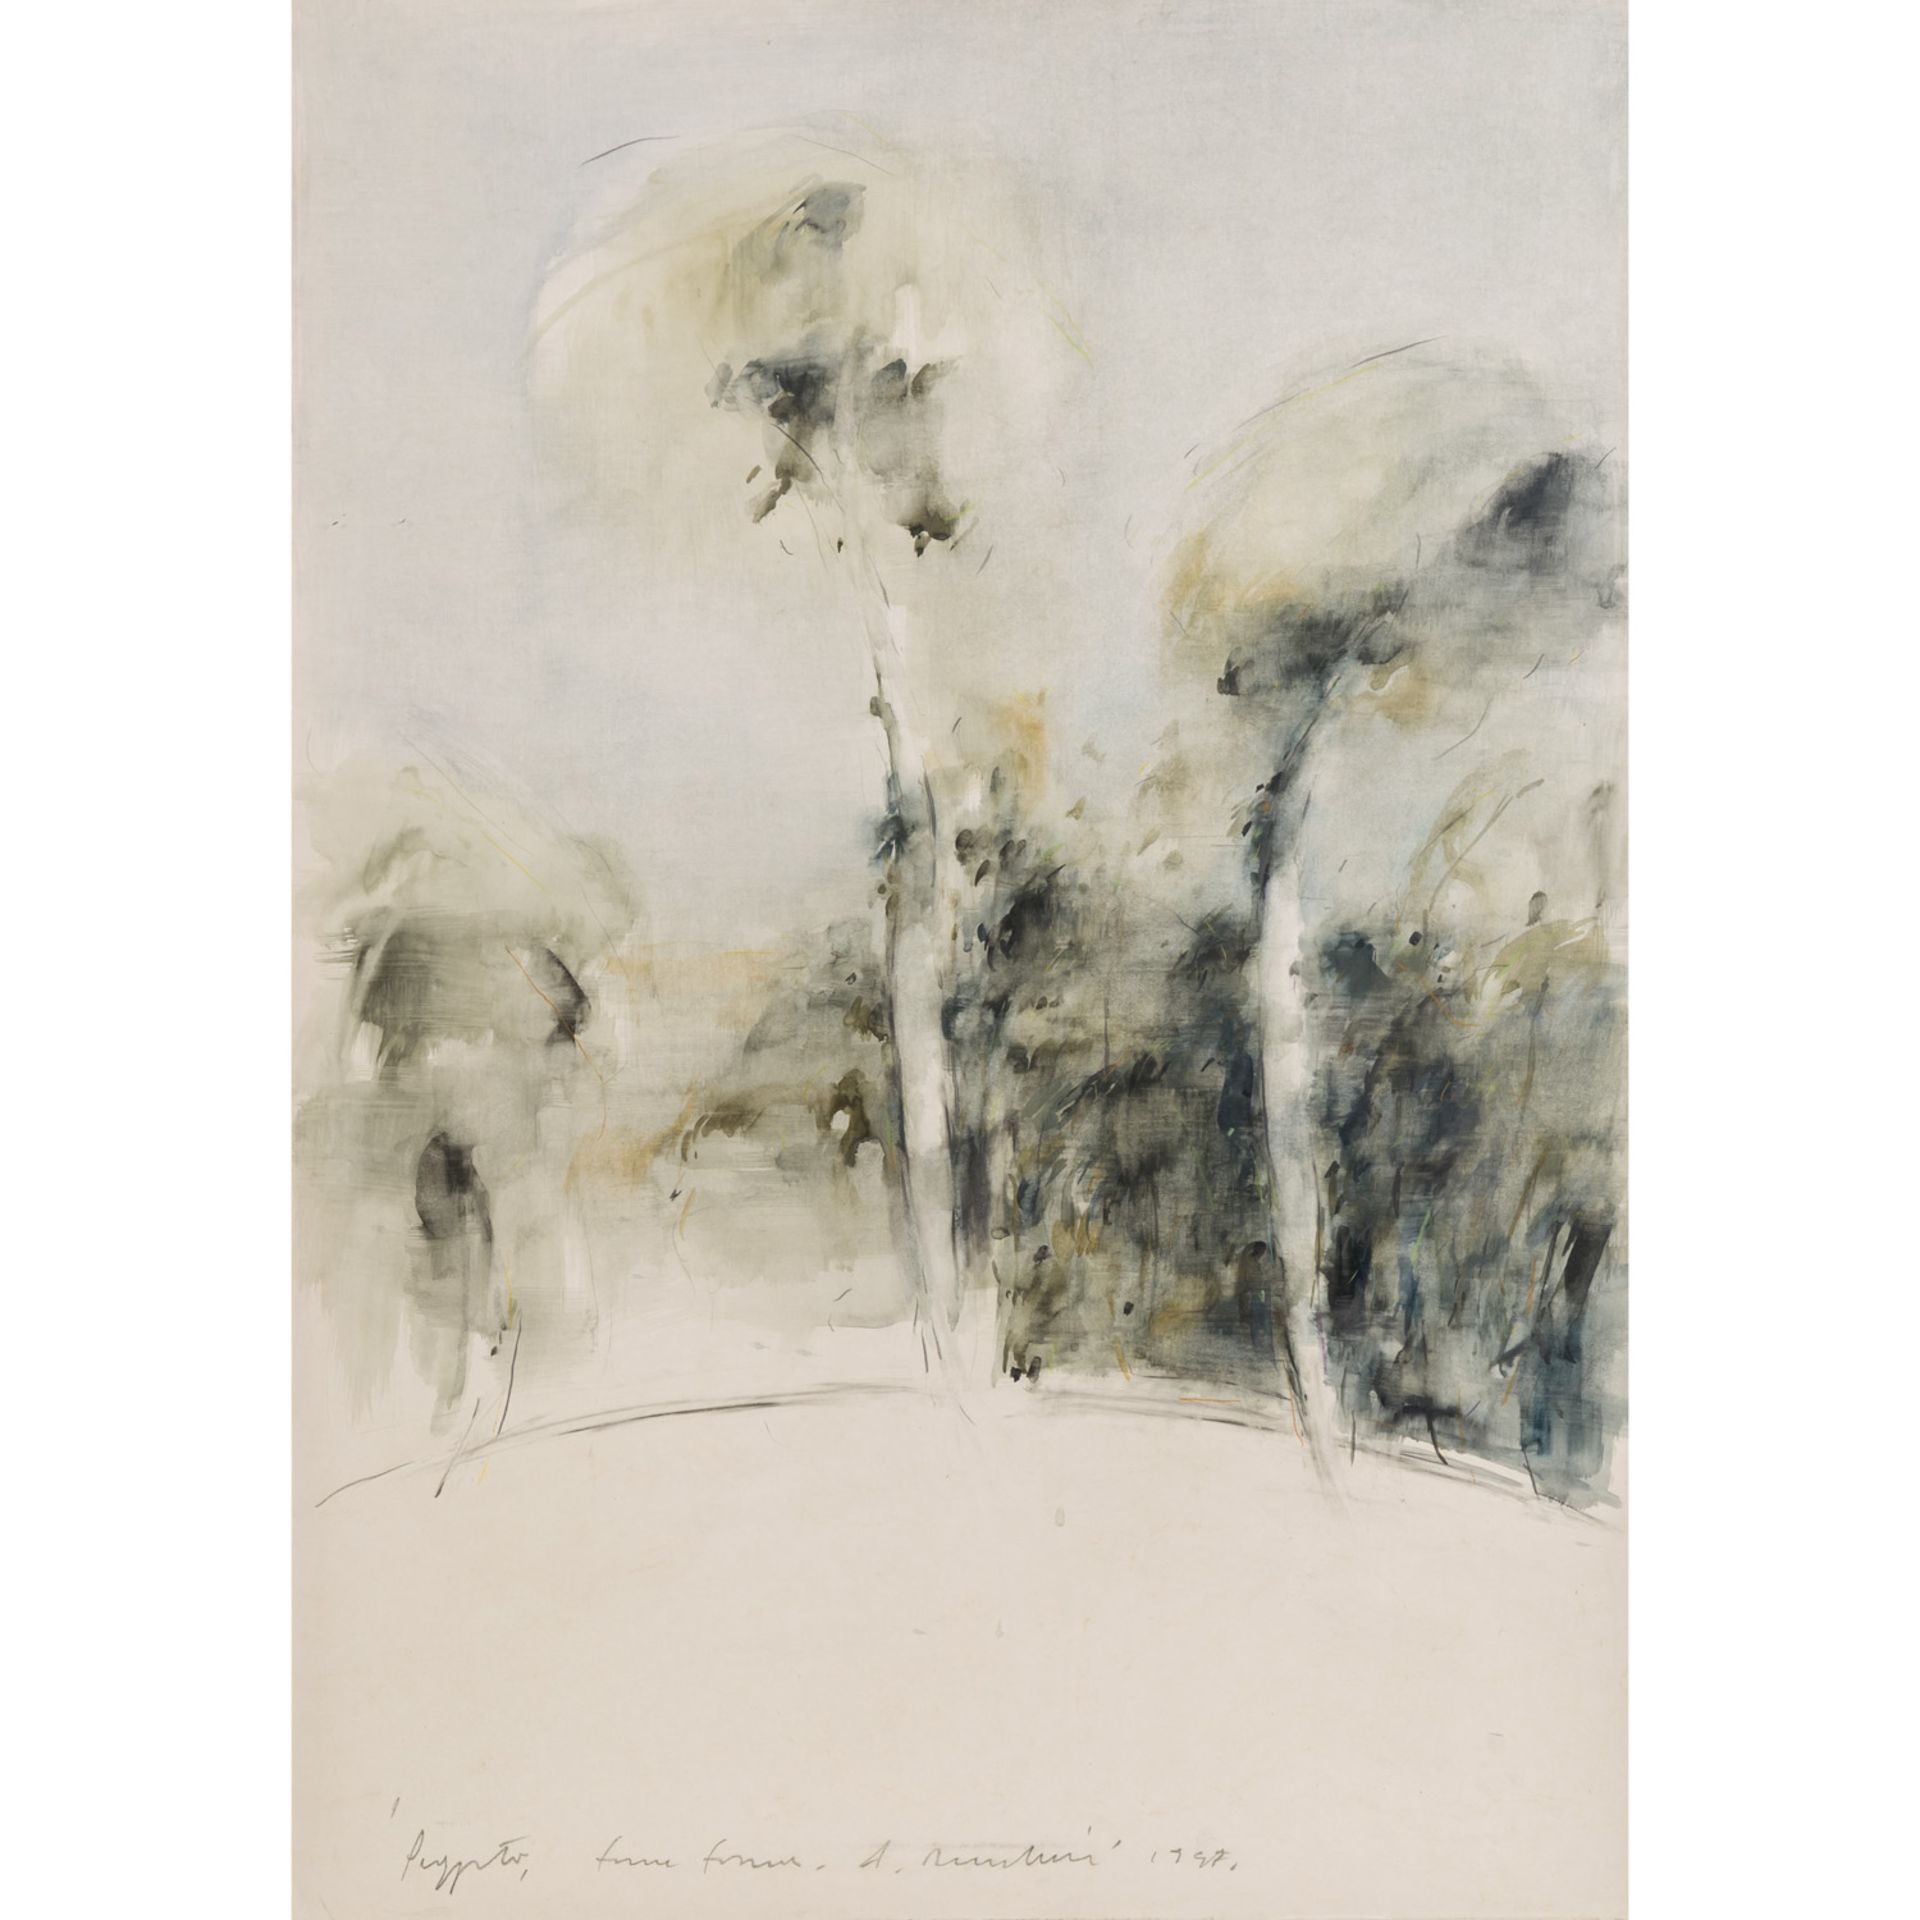 NOCENTINI, ALESSANDRO (geb. 1949), "Landschaft mit vereinzelten Bäumen", abstrahierte Darstellung,